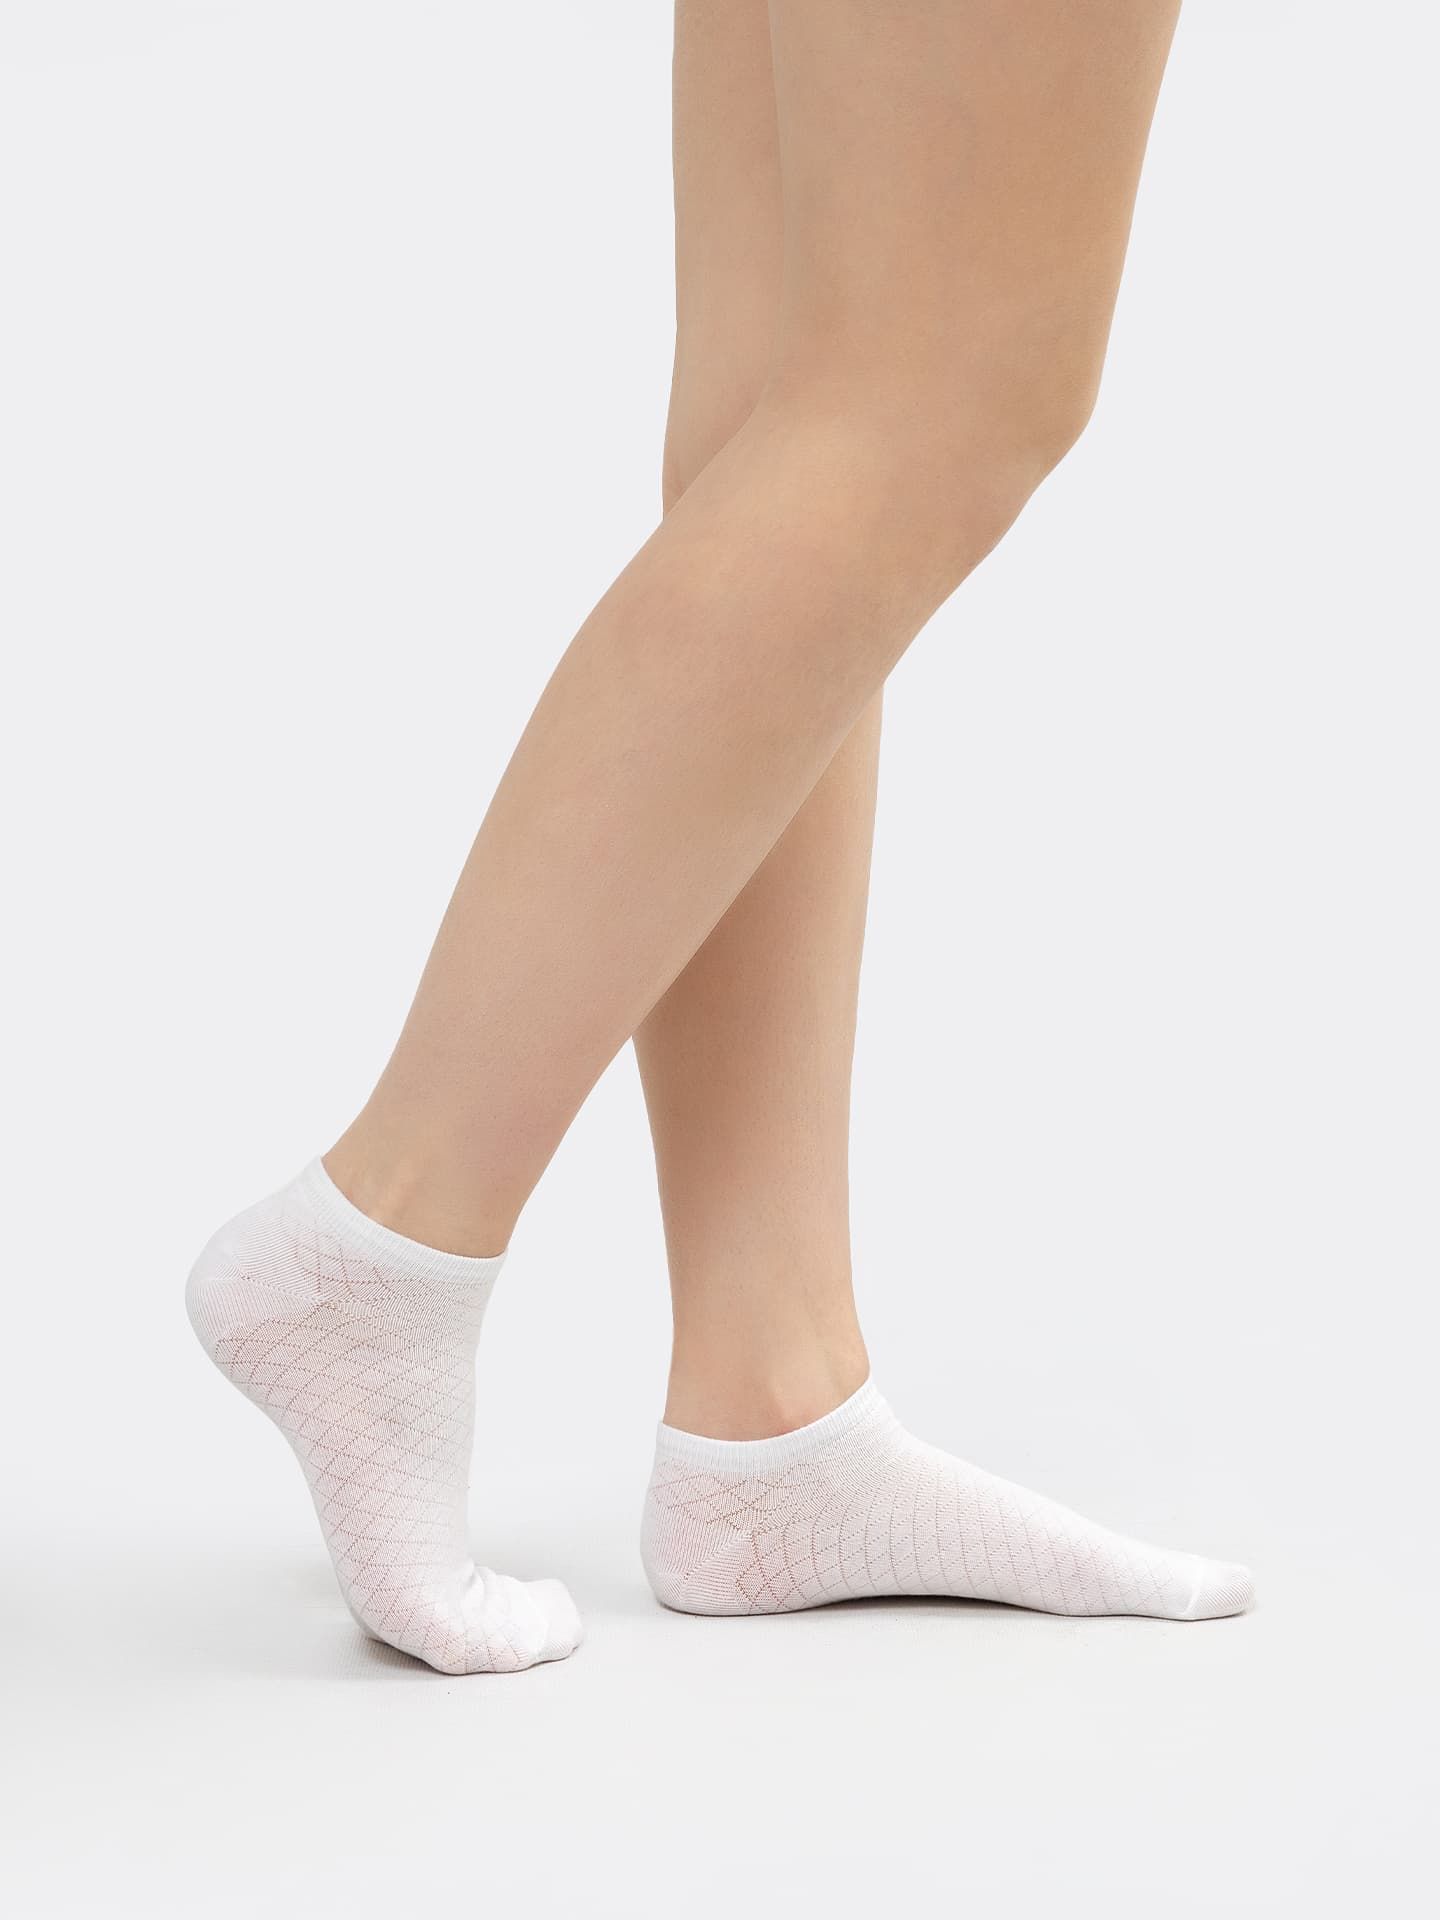 Короткие носки женские в белом цвете с рисунком в виде ромбов